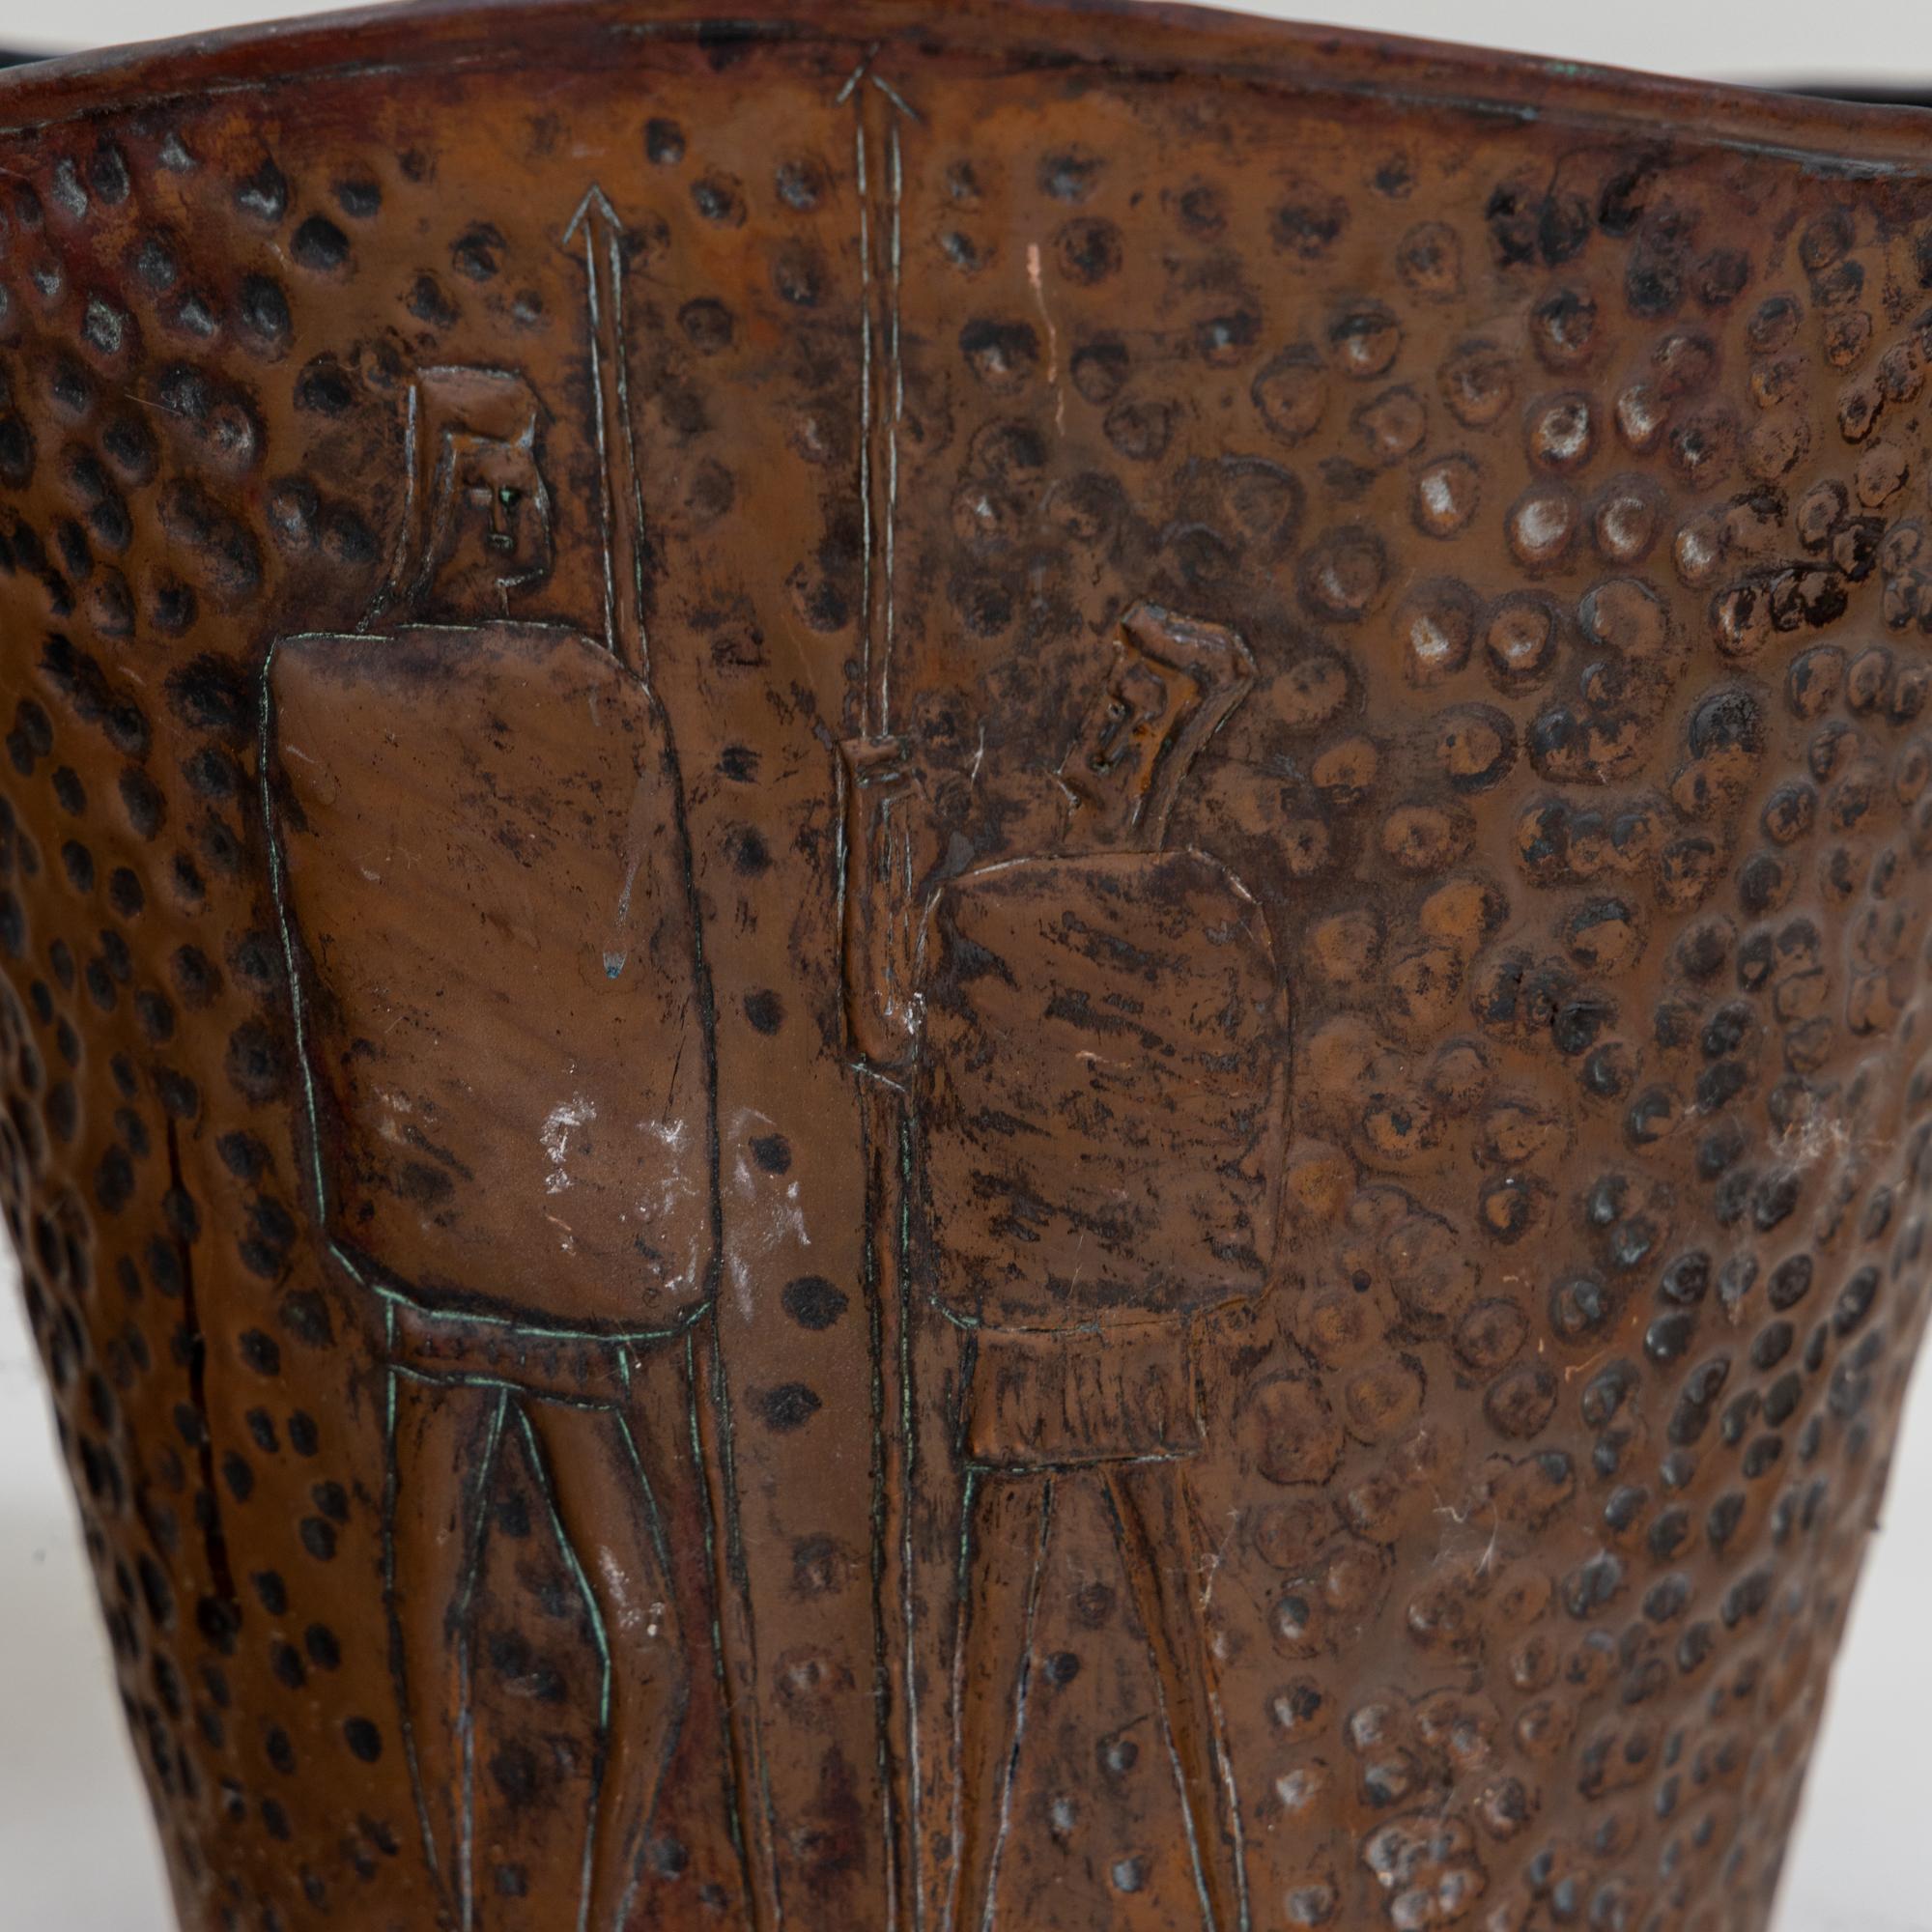 Ein Paar Pflanzentöpfe aus Kupfer mit Reliefwänden und gewelltem Rand. Ein Topf zeigt stilisierte Krieger, der andere Granatäpfel.